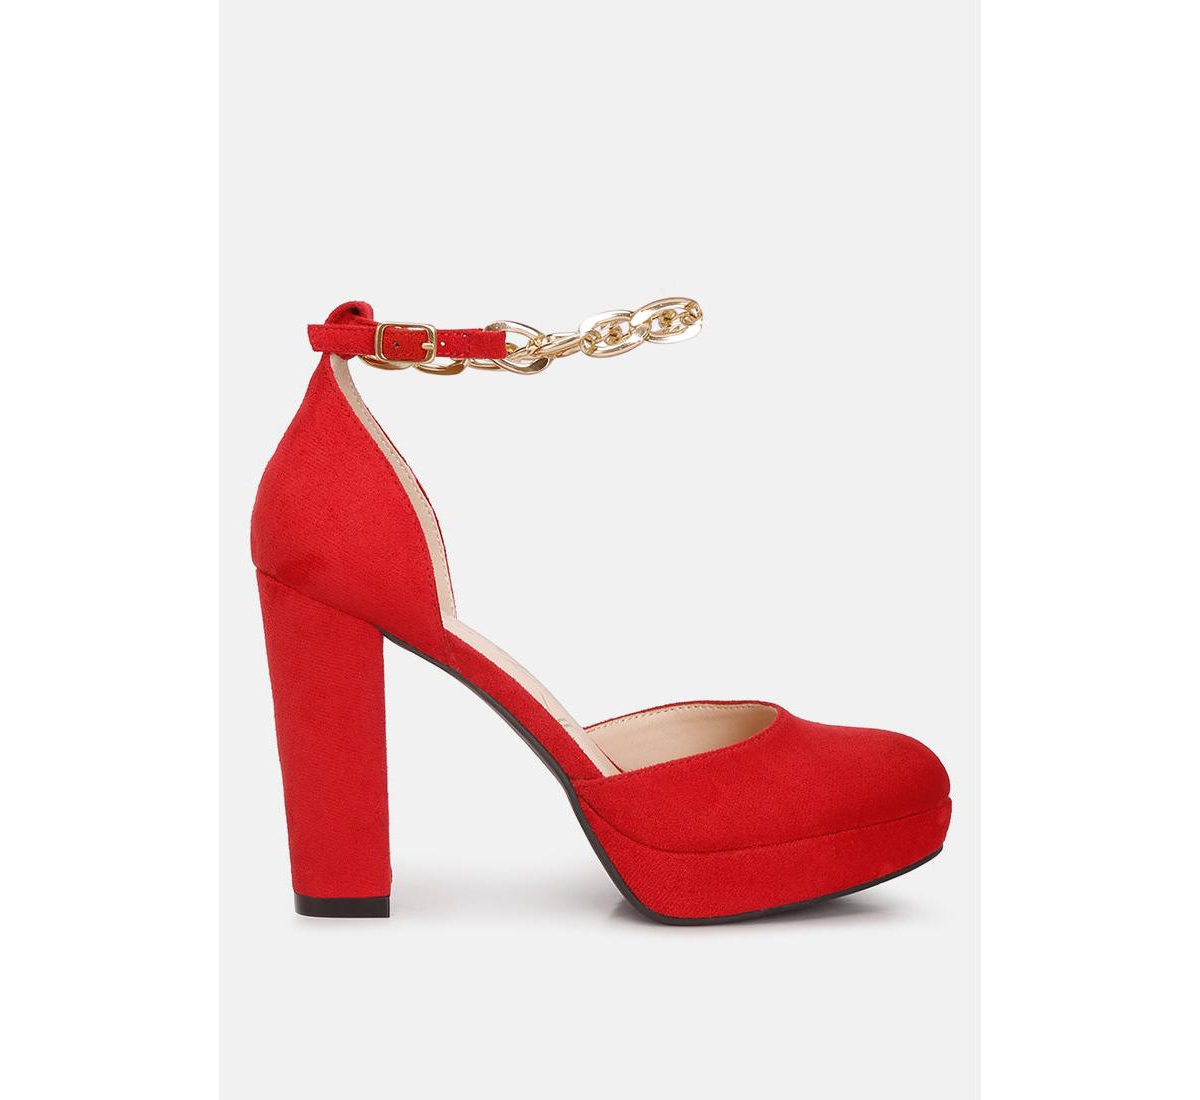 inigo interchangeable ankle strap platform sandals - Red